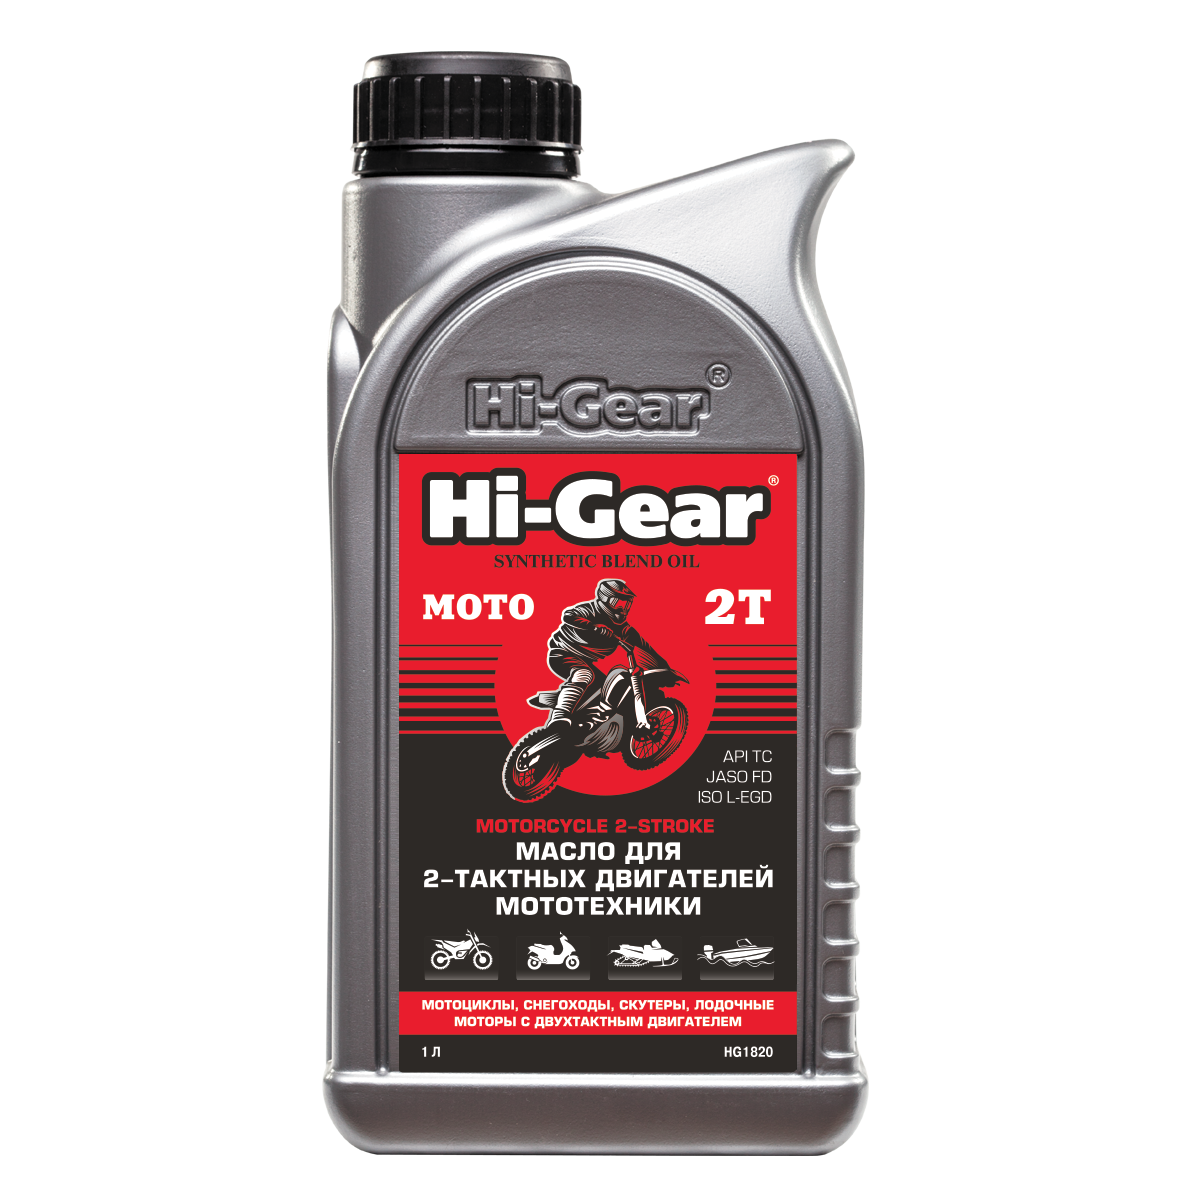 В продаже появилось масло моторное Hi-Gear (HG1820) для двухтактных двигателей мототехники MOTORCYCLE 2-STROKE 